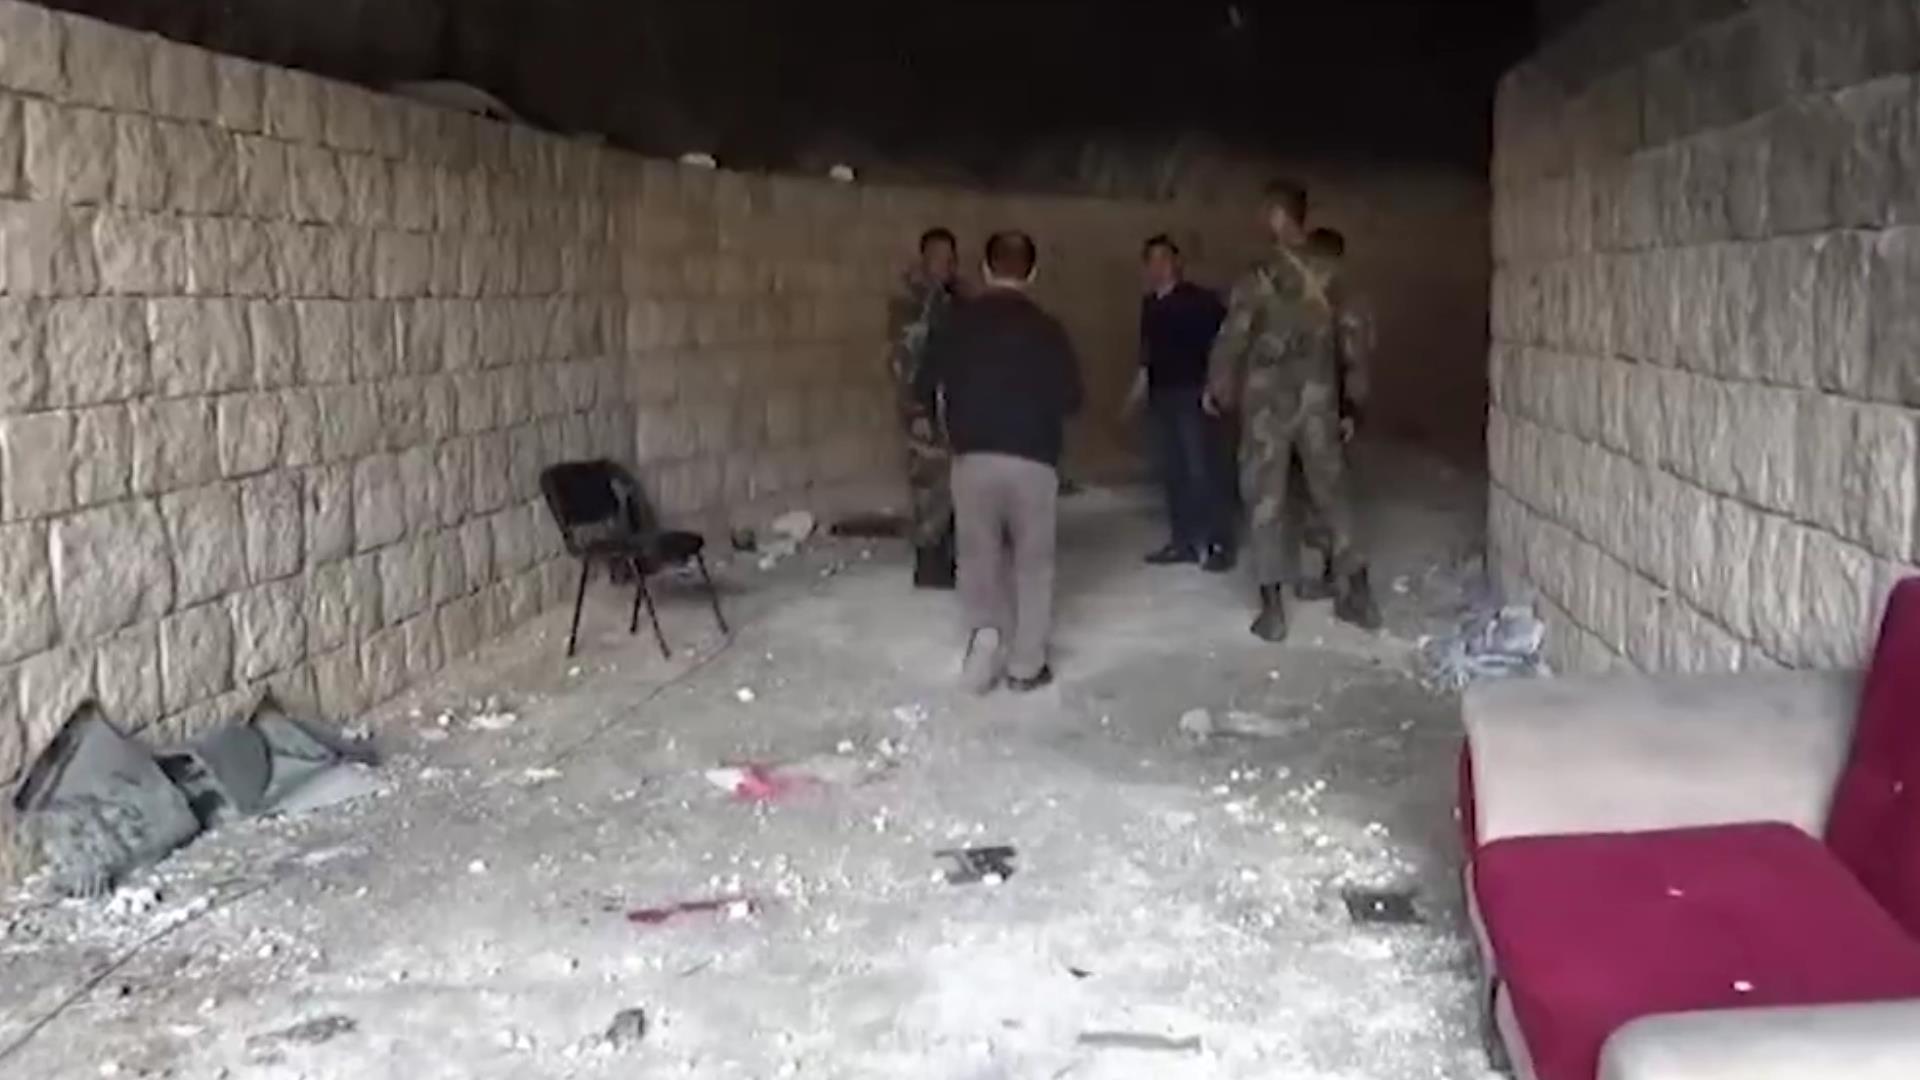 الجيش يعثر على مقر للجولاني في منطقة عنجارة غرب حلب